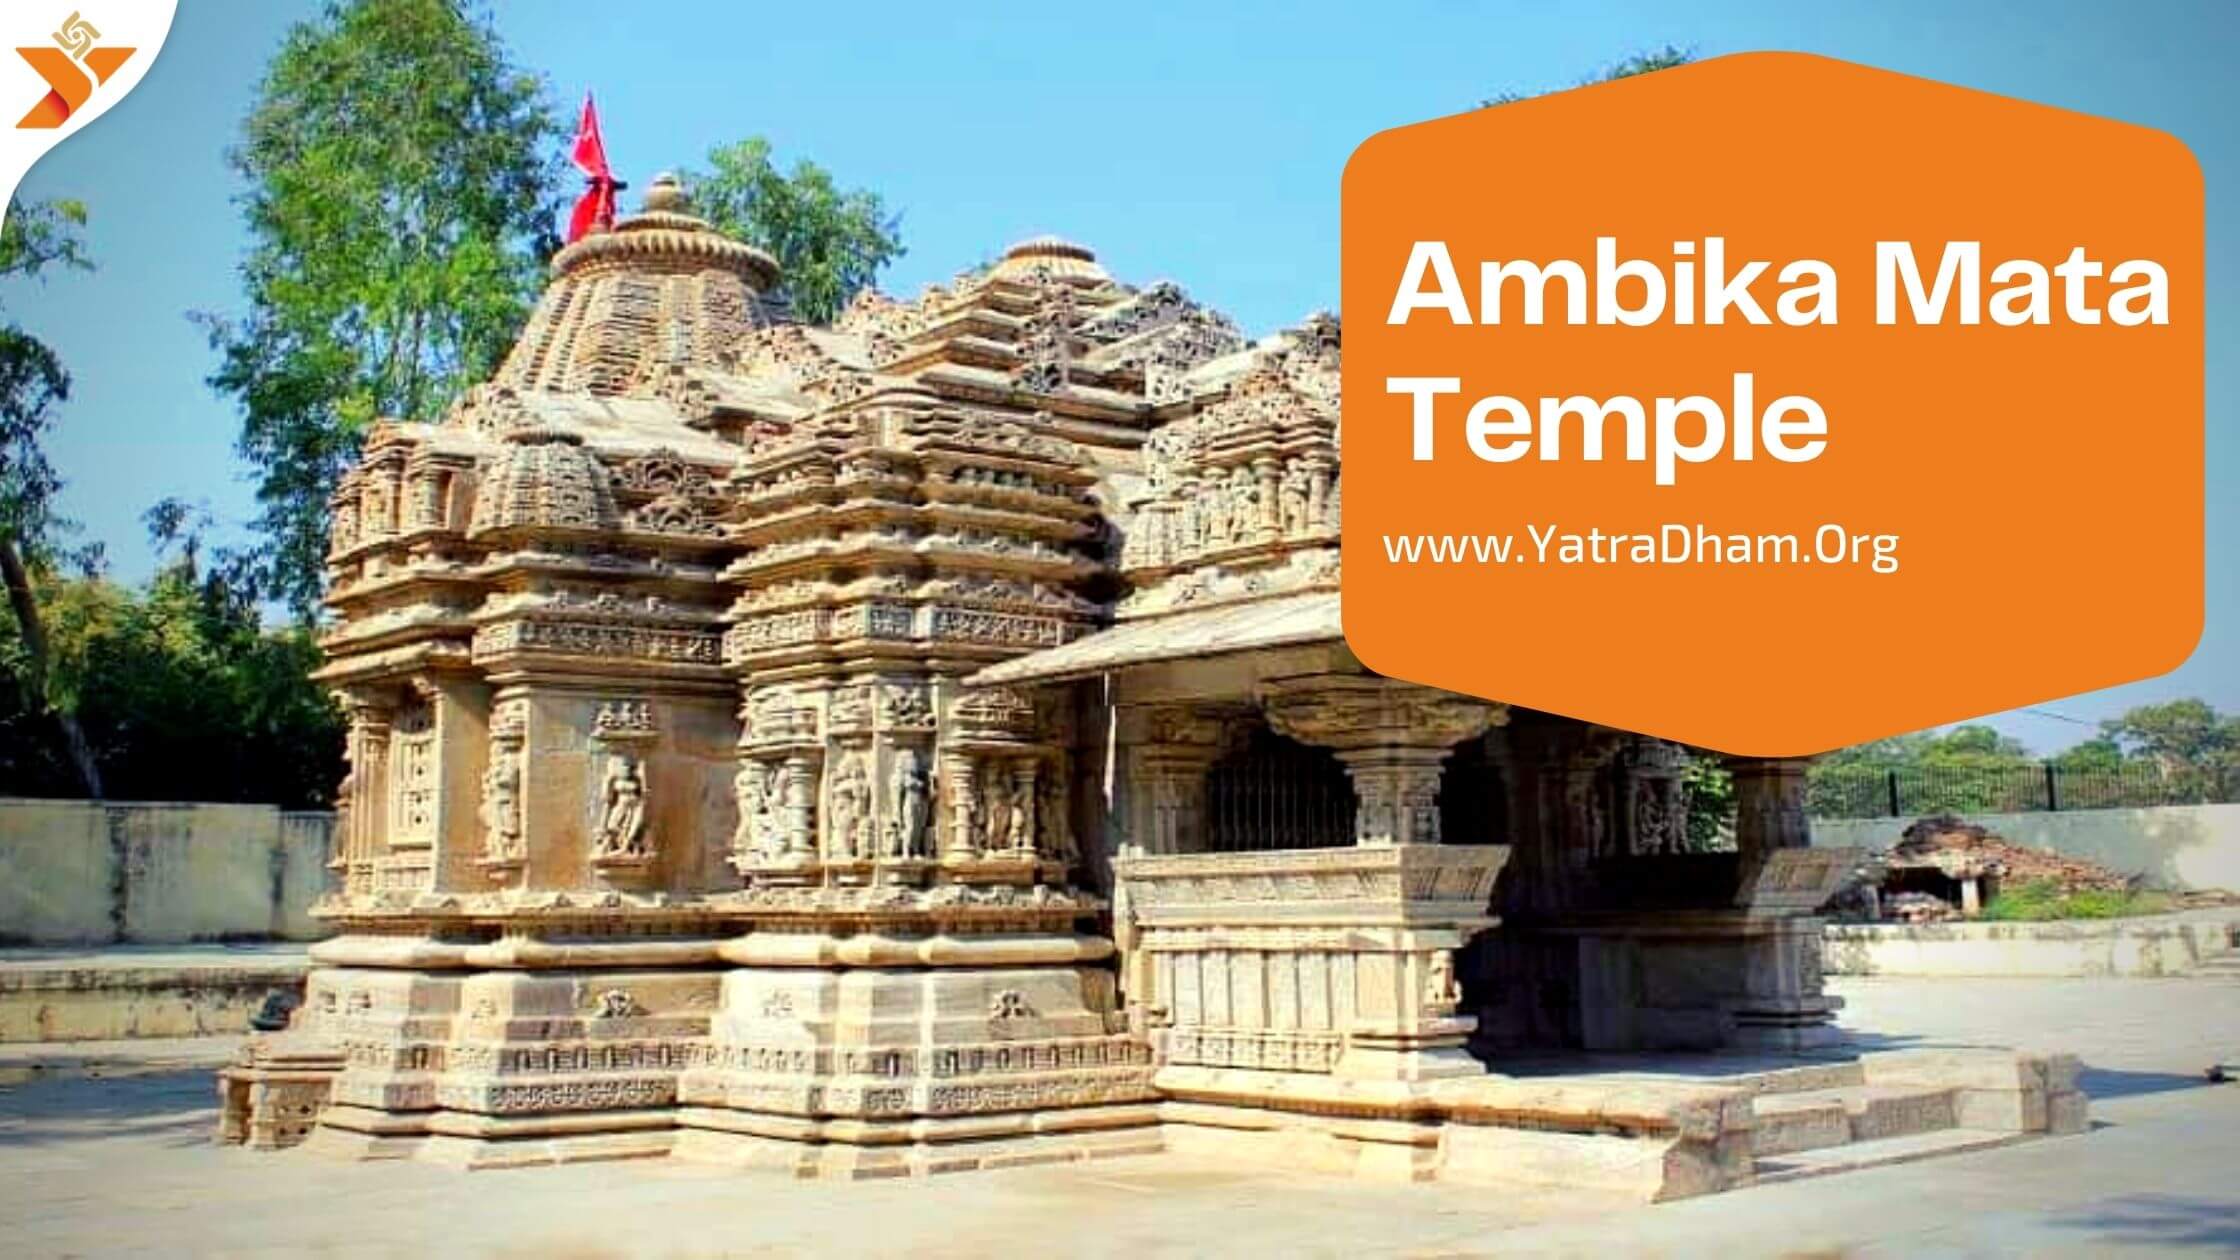 Ambika Mata Temple, Rajasthan